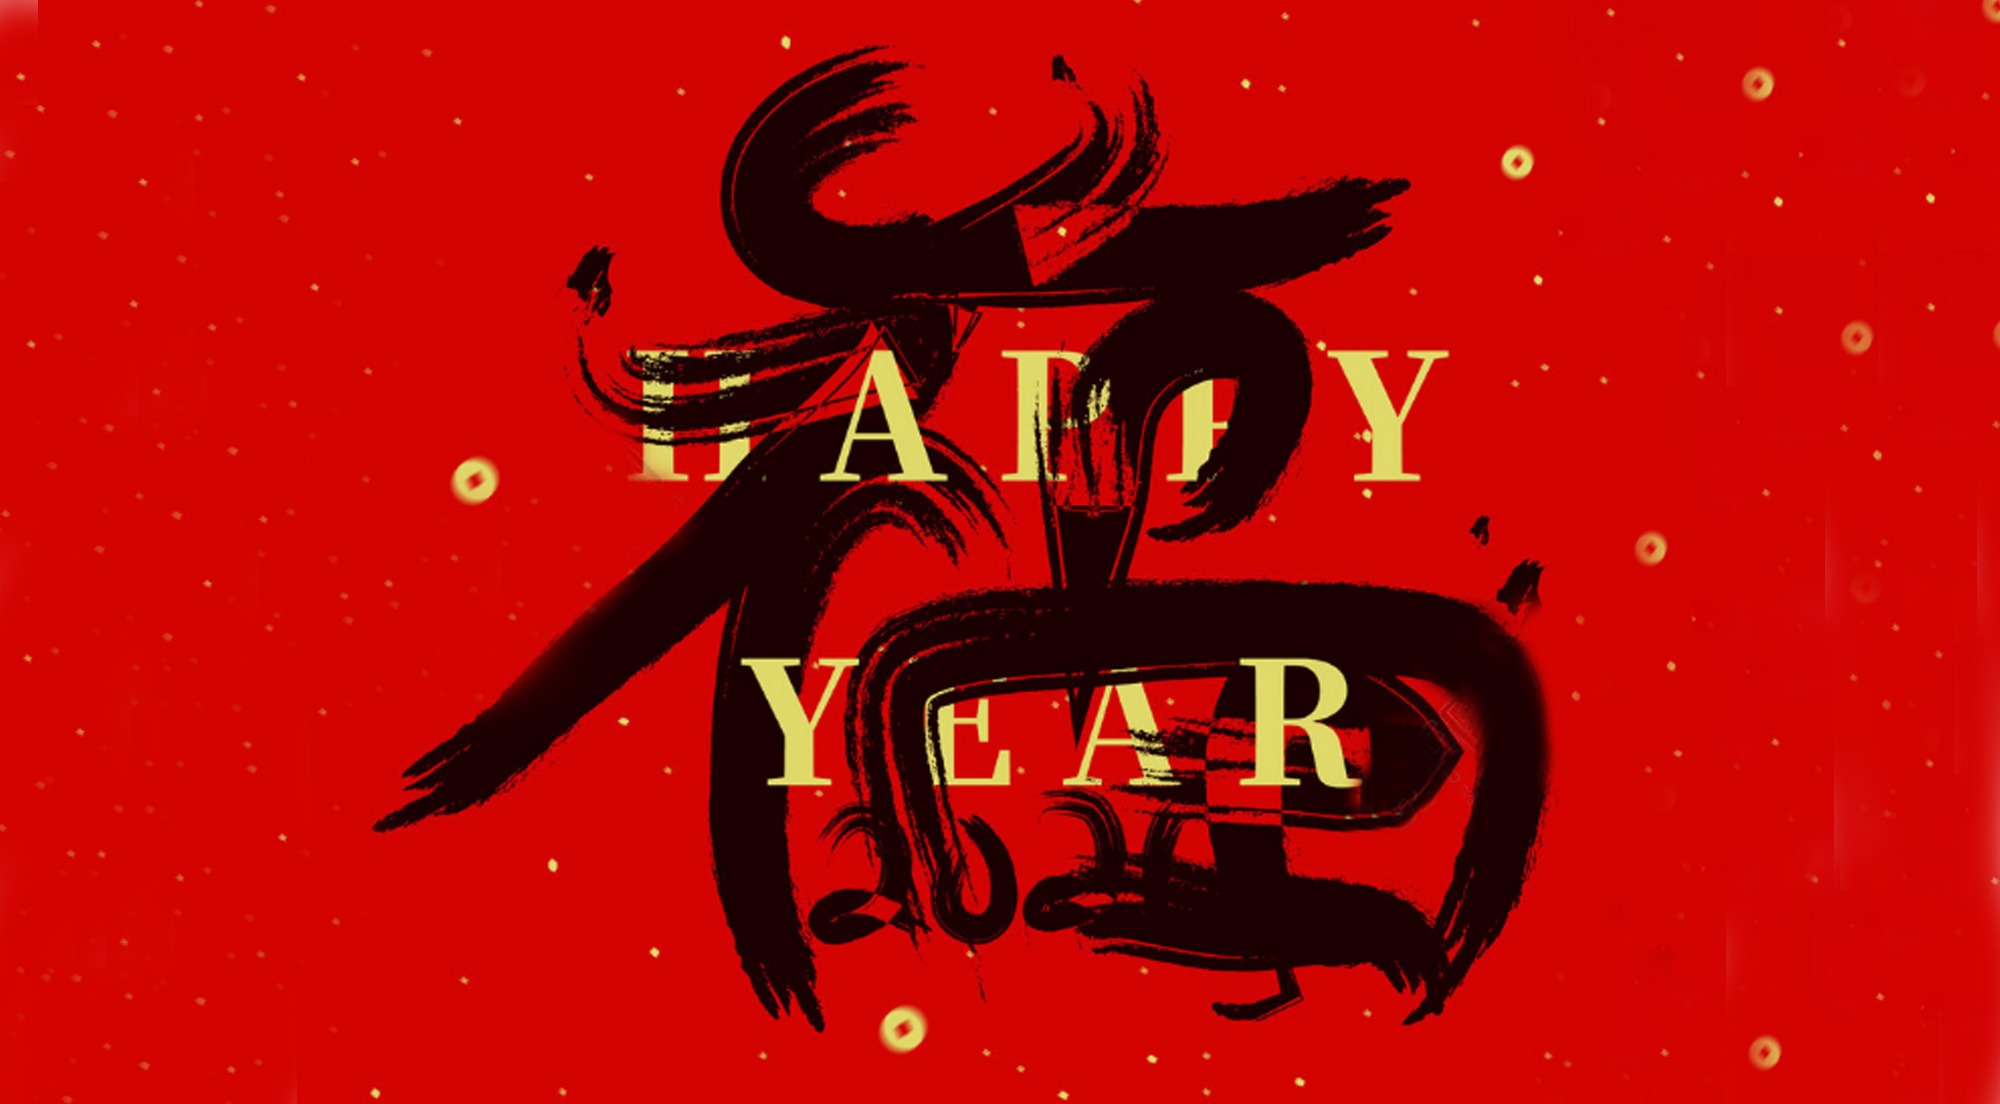 beplay客户端下载一官网(天津)科技有限公司
预祝大家：新年快乐！